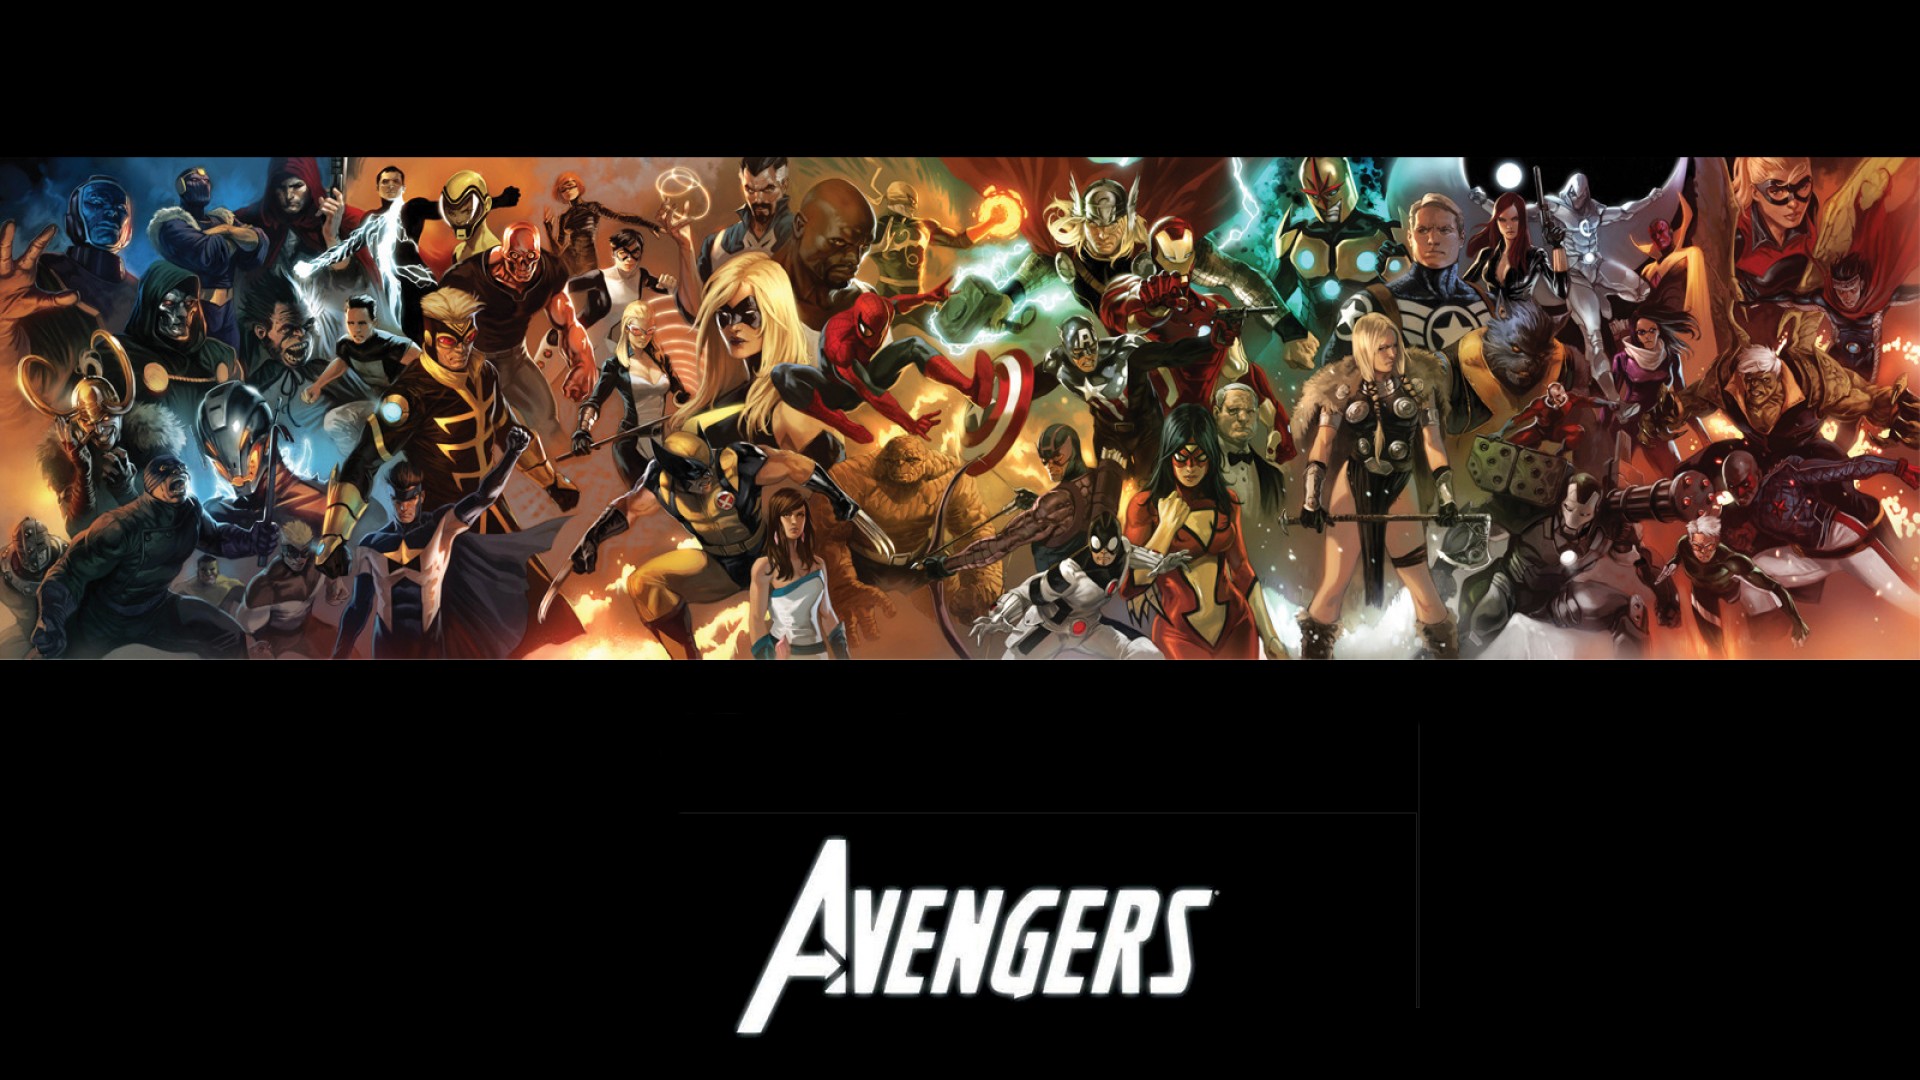 Avengers HD Wallpapers 1080p  WallpaperSafari